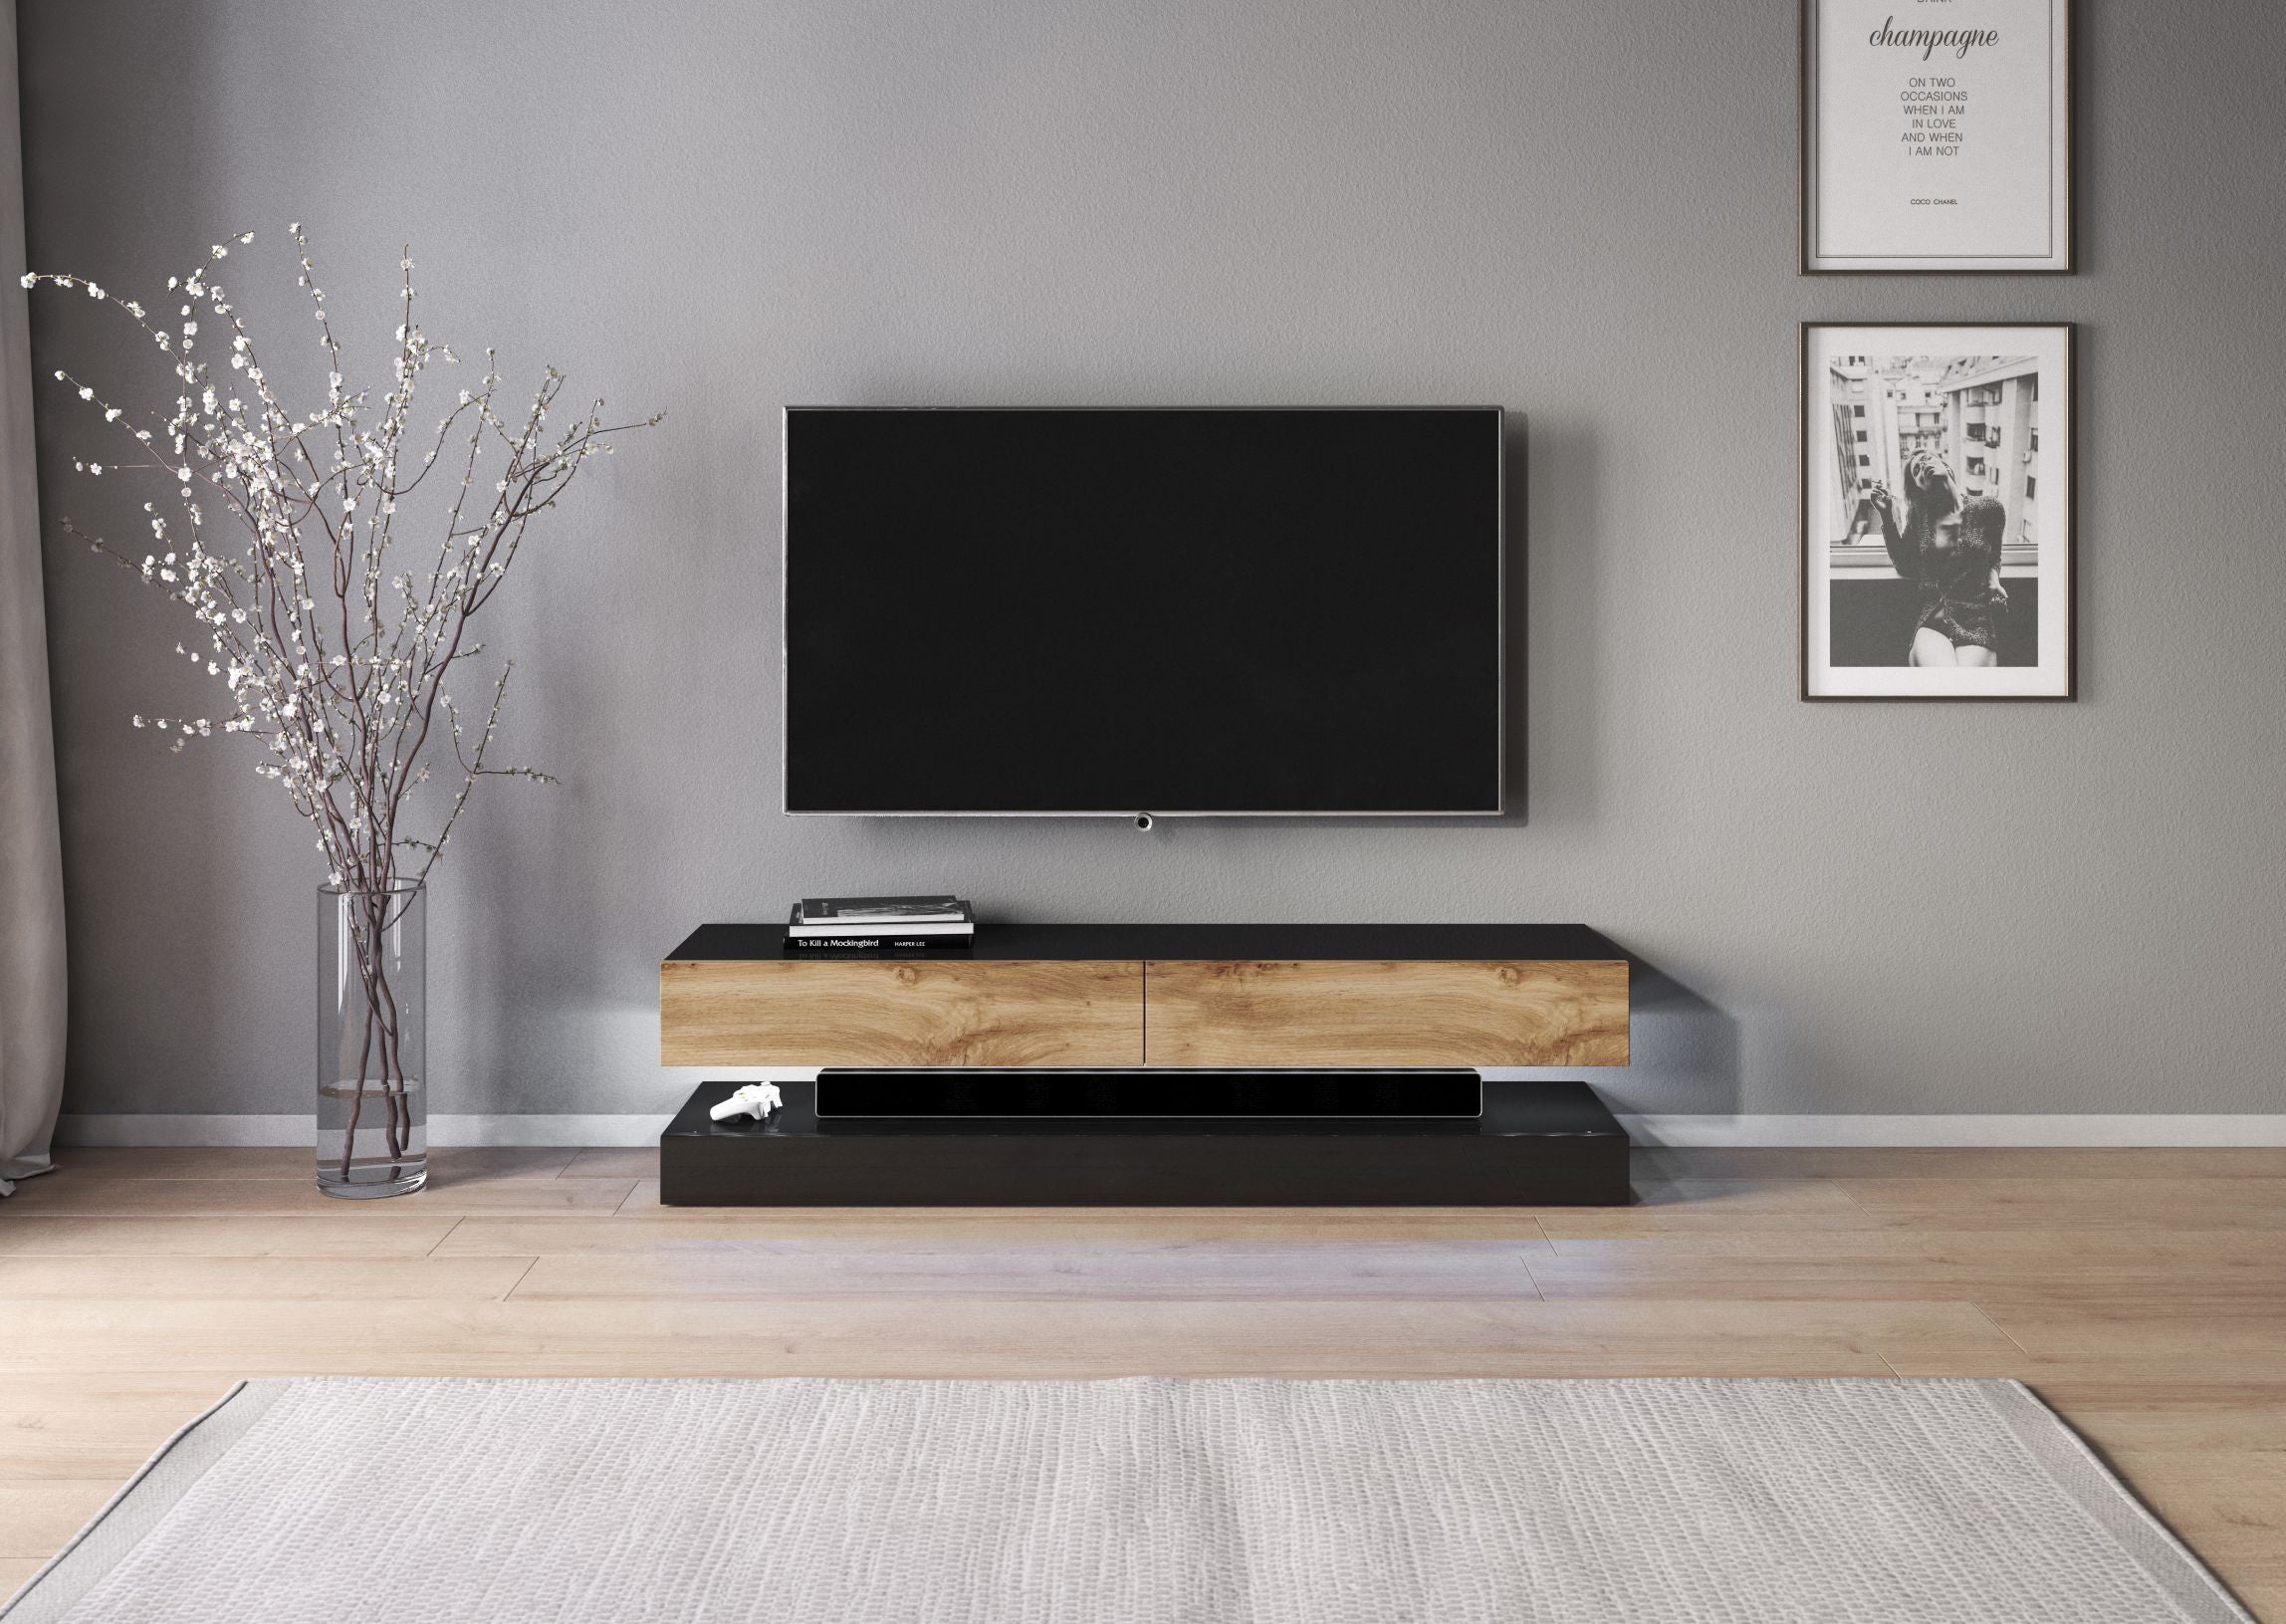 SIRHONA Meuble TV LED Noir, Banc TV 140x35x45cm, Éclairage LED RGB avec  Couleur réglable, Capacité de Charge 30 kg, Convient pour Salon ou Chambre